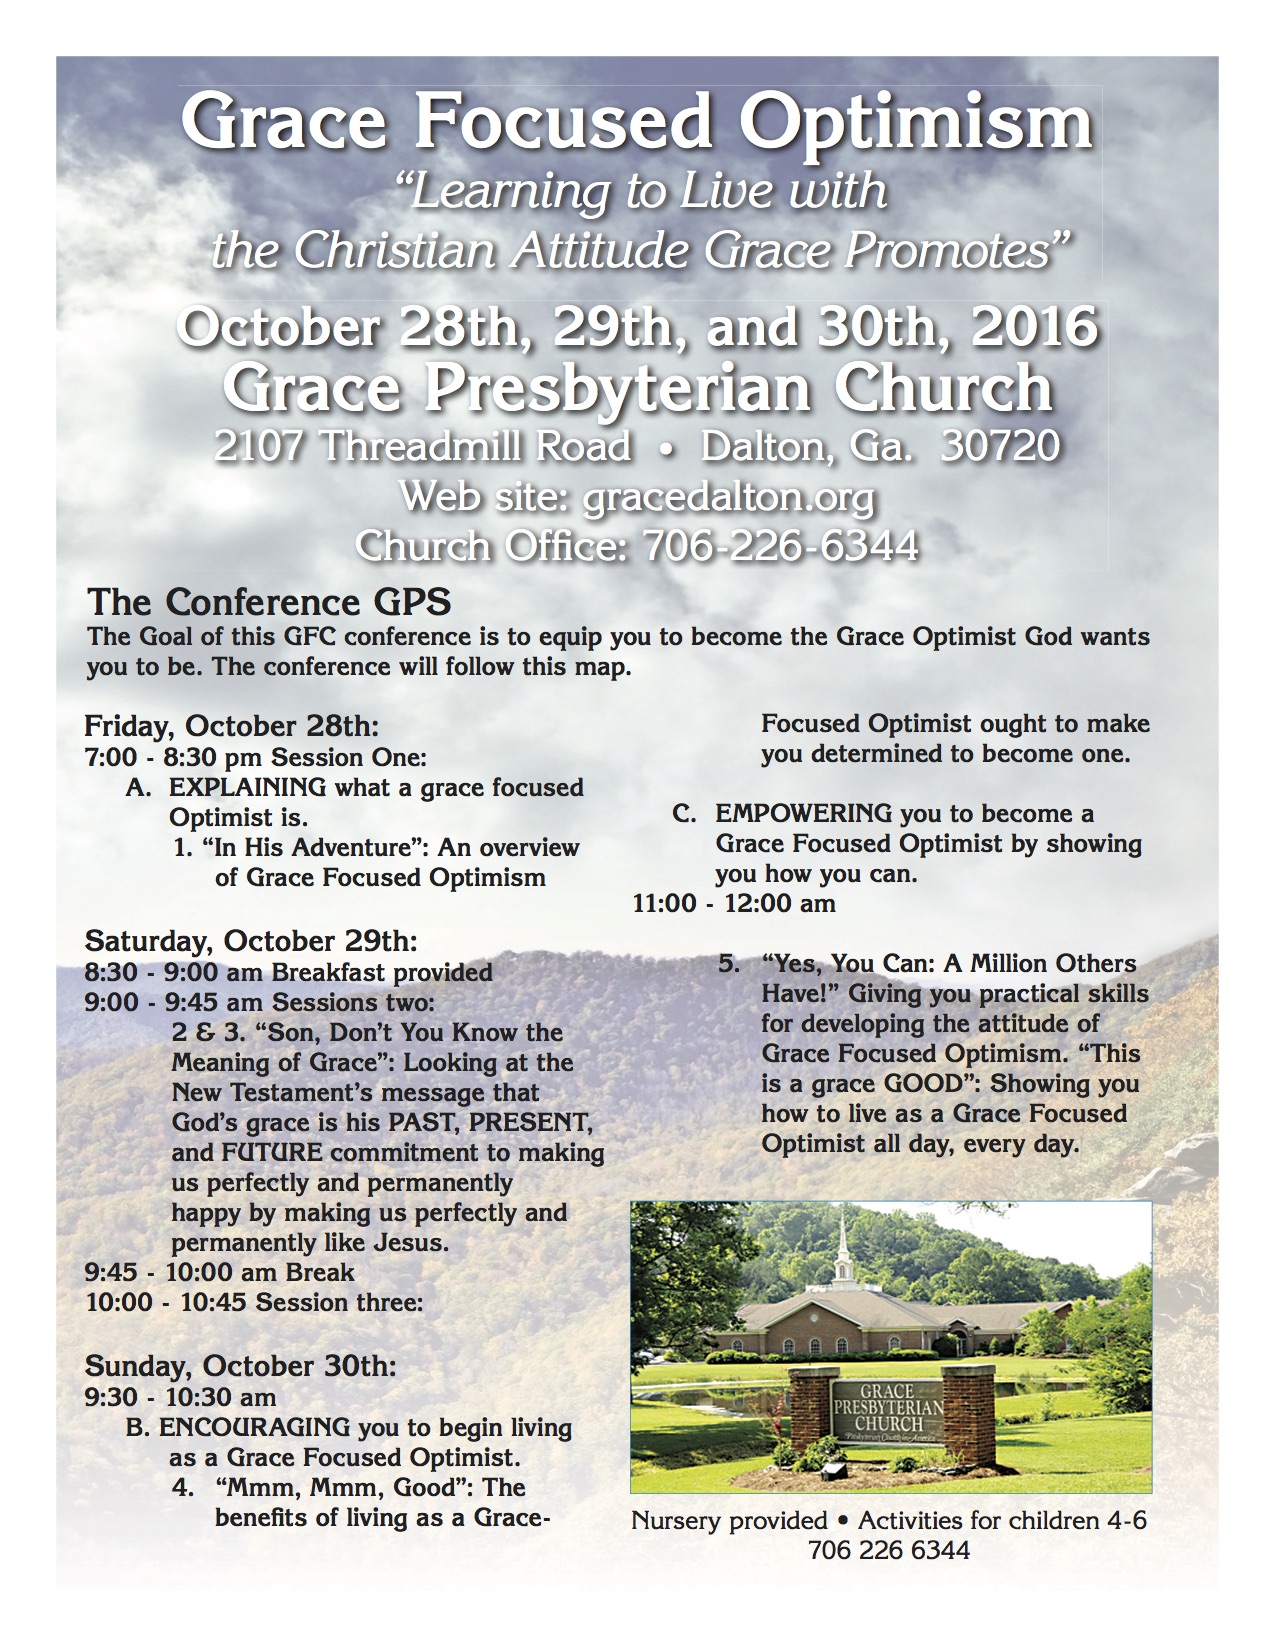 gracepresb-autumnbible-conference-flyer